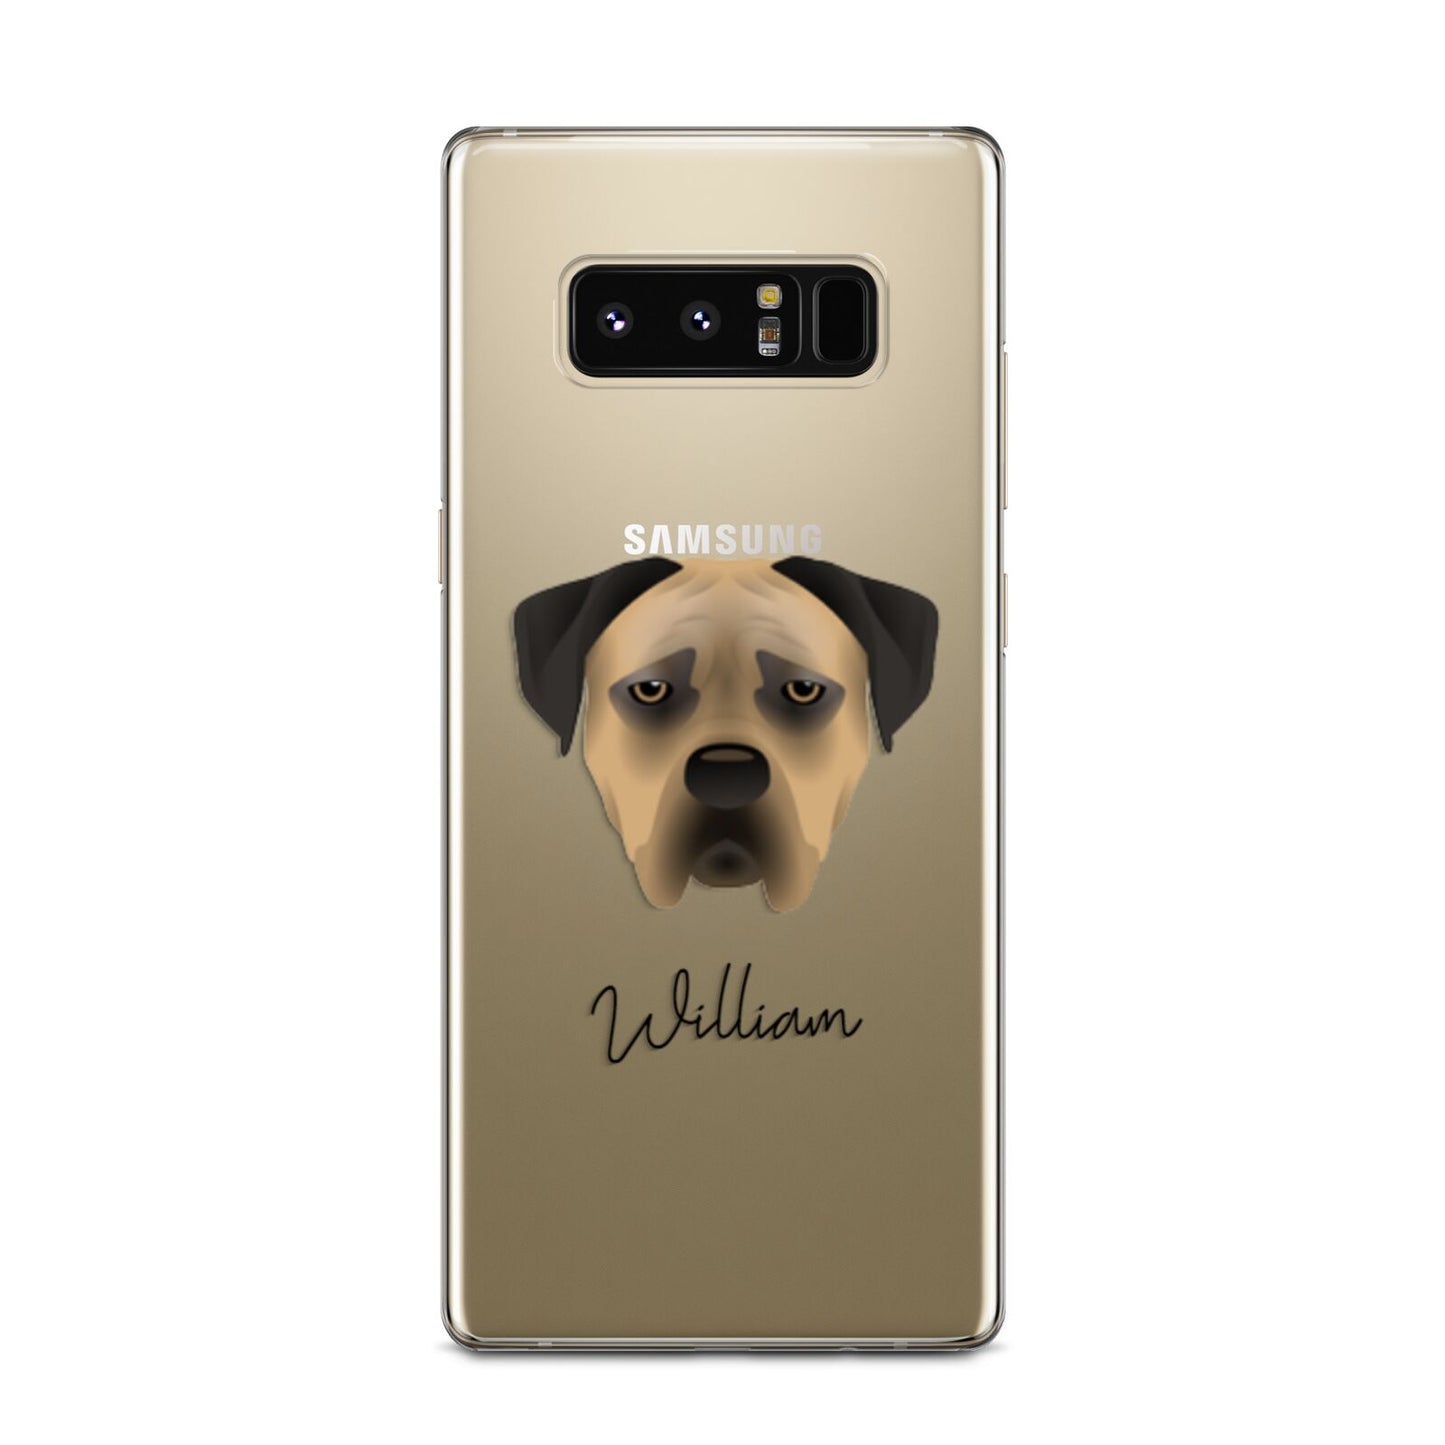 Boerboel Personalised Samsung Galaxy Note 8 Case